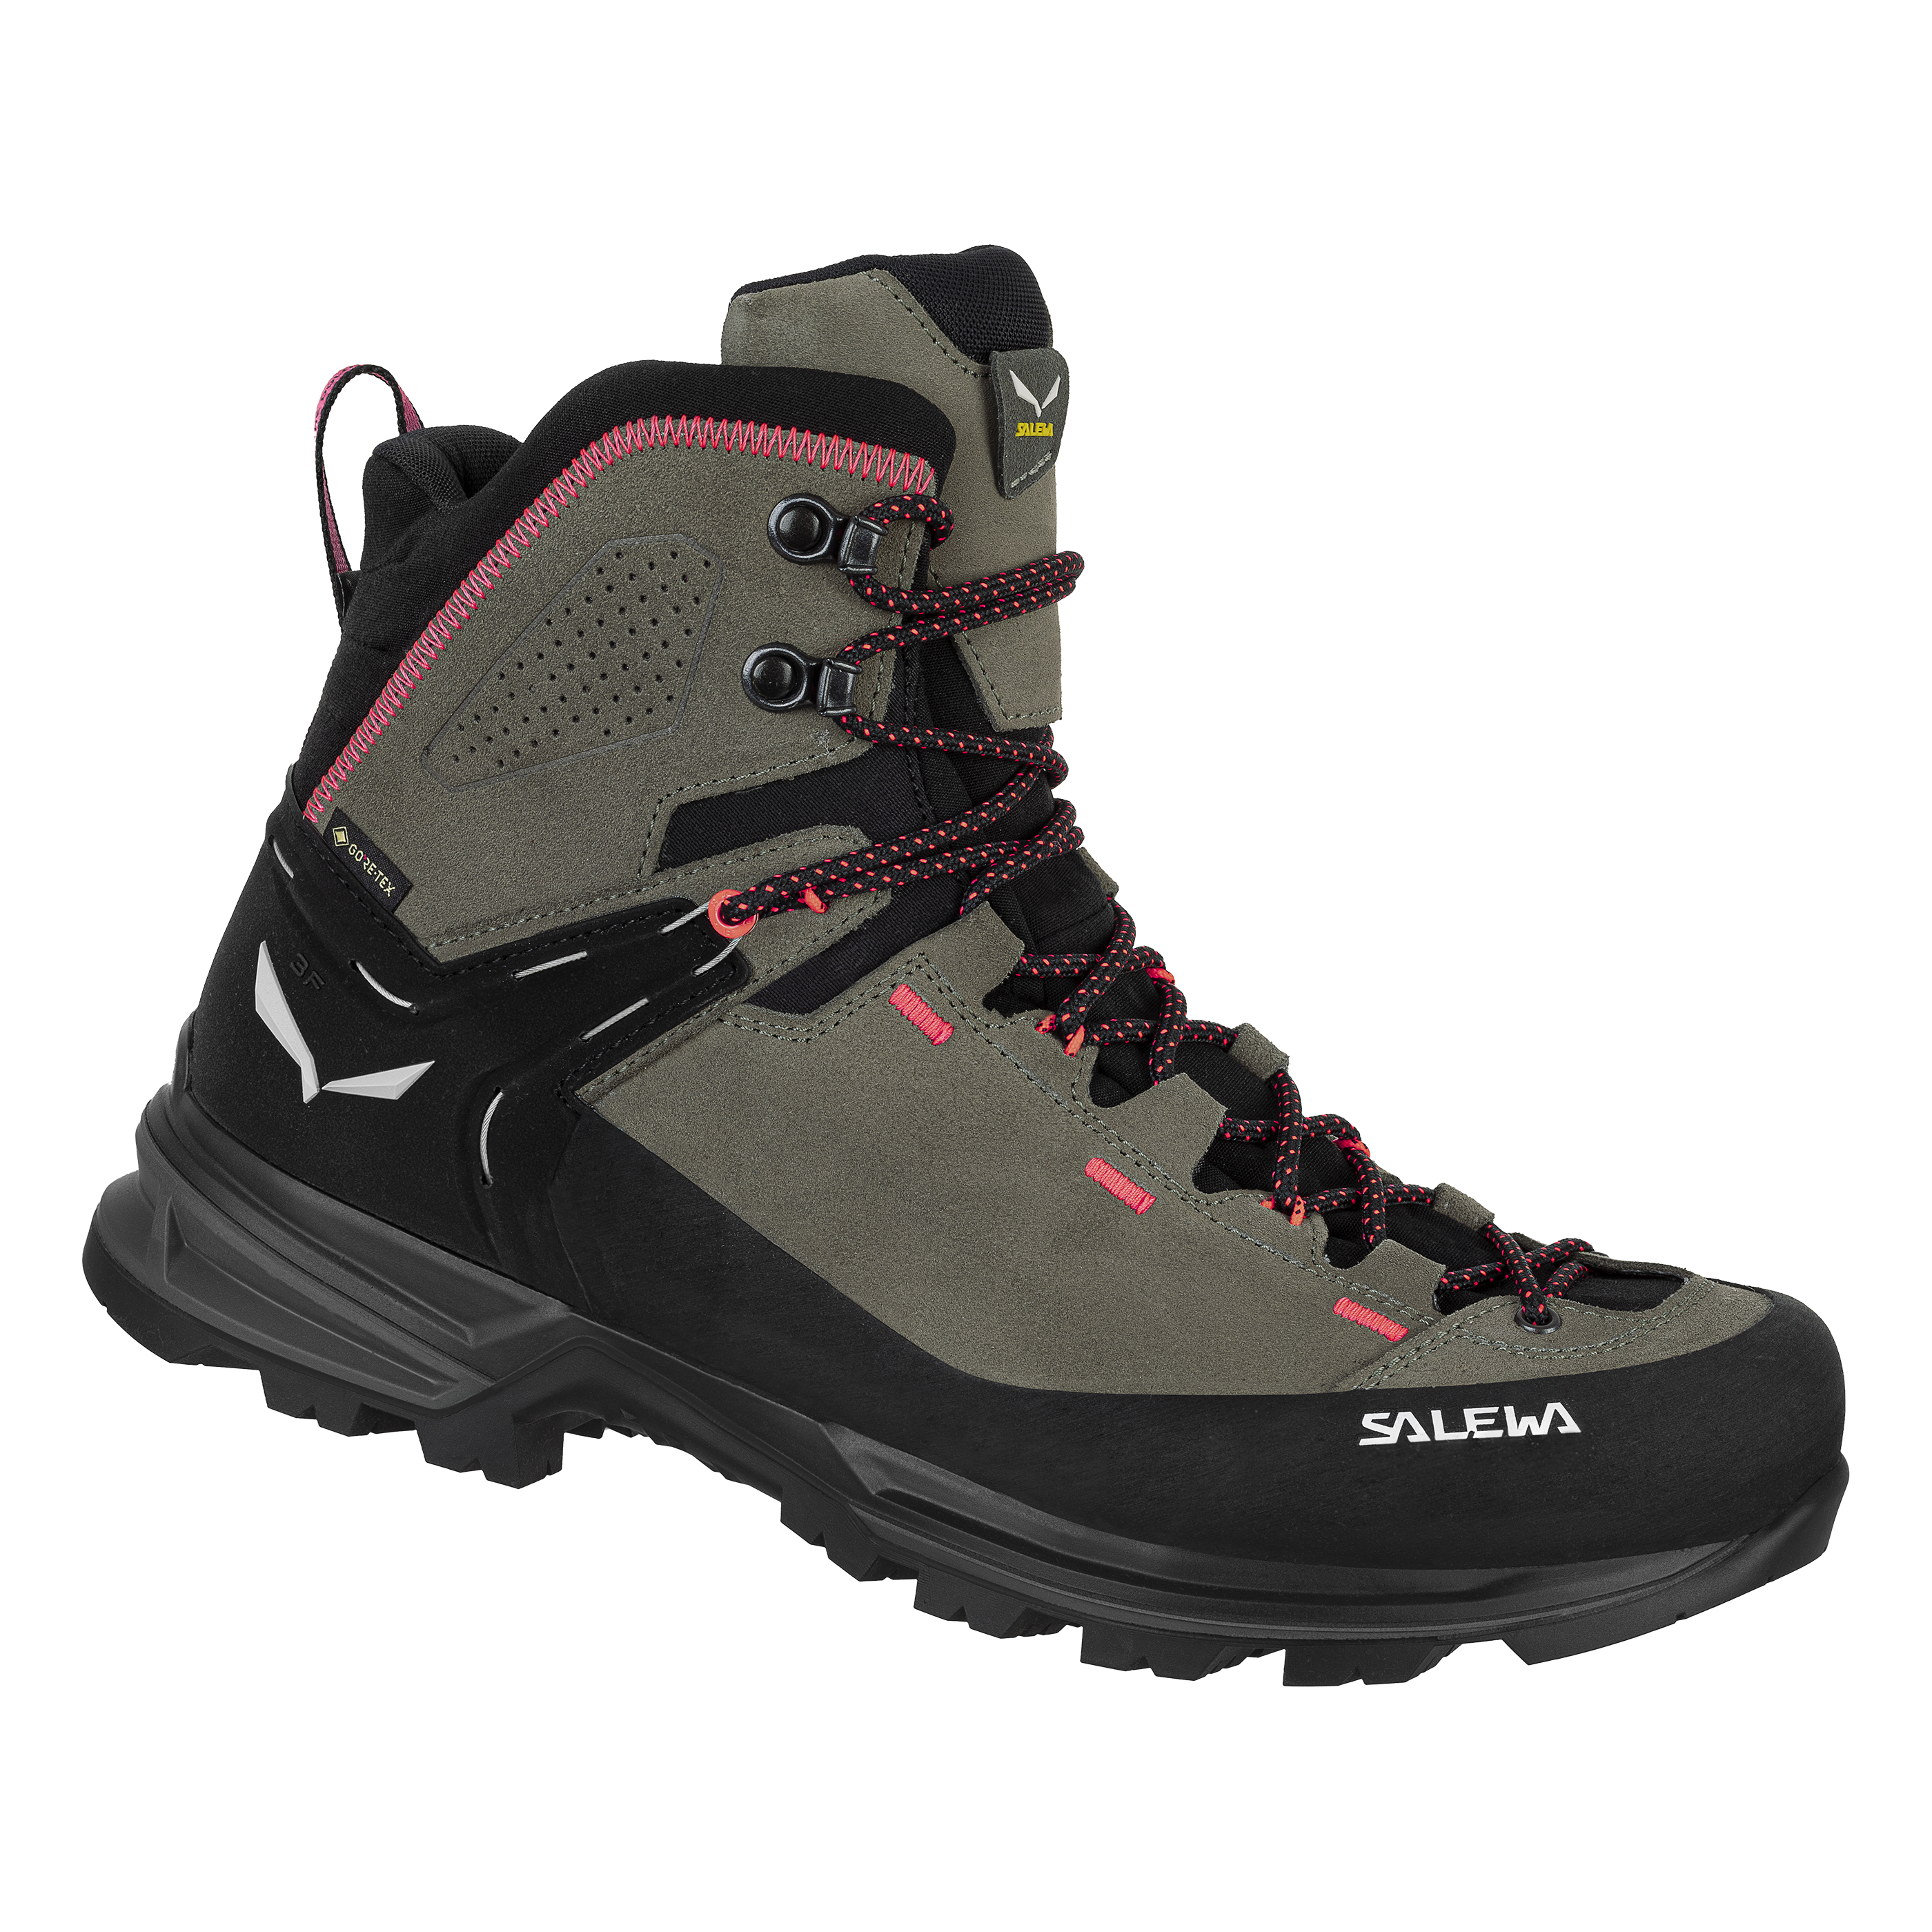 Salewa Alp Trainer 2 GTX Hiking Shoes Women - dark denim/black 8669